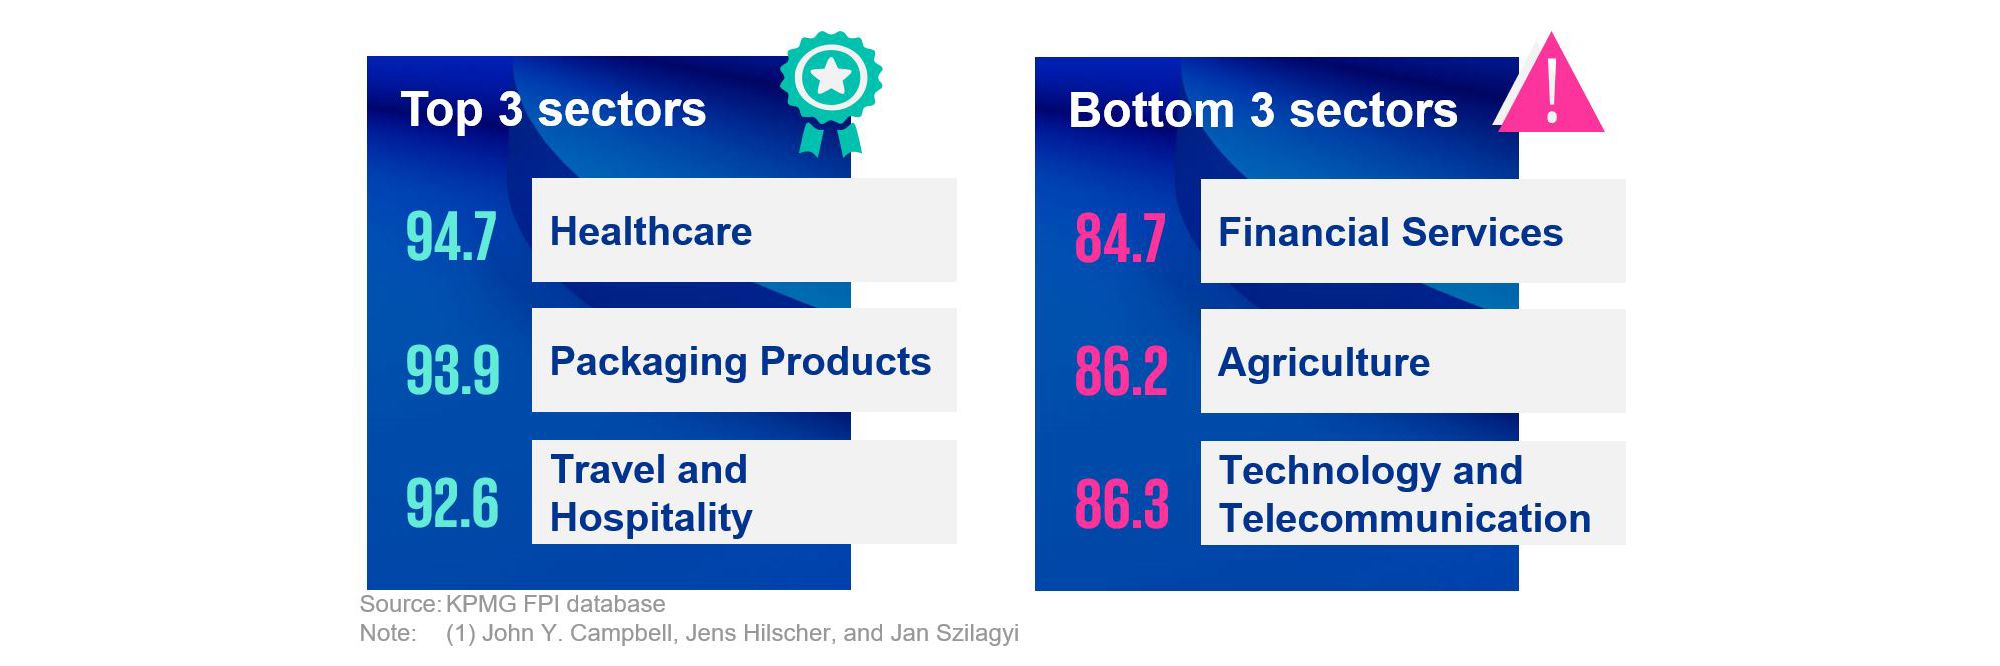 FPI - Top 3 sectors and Bottom 3 sectors